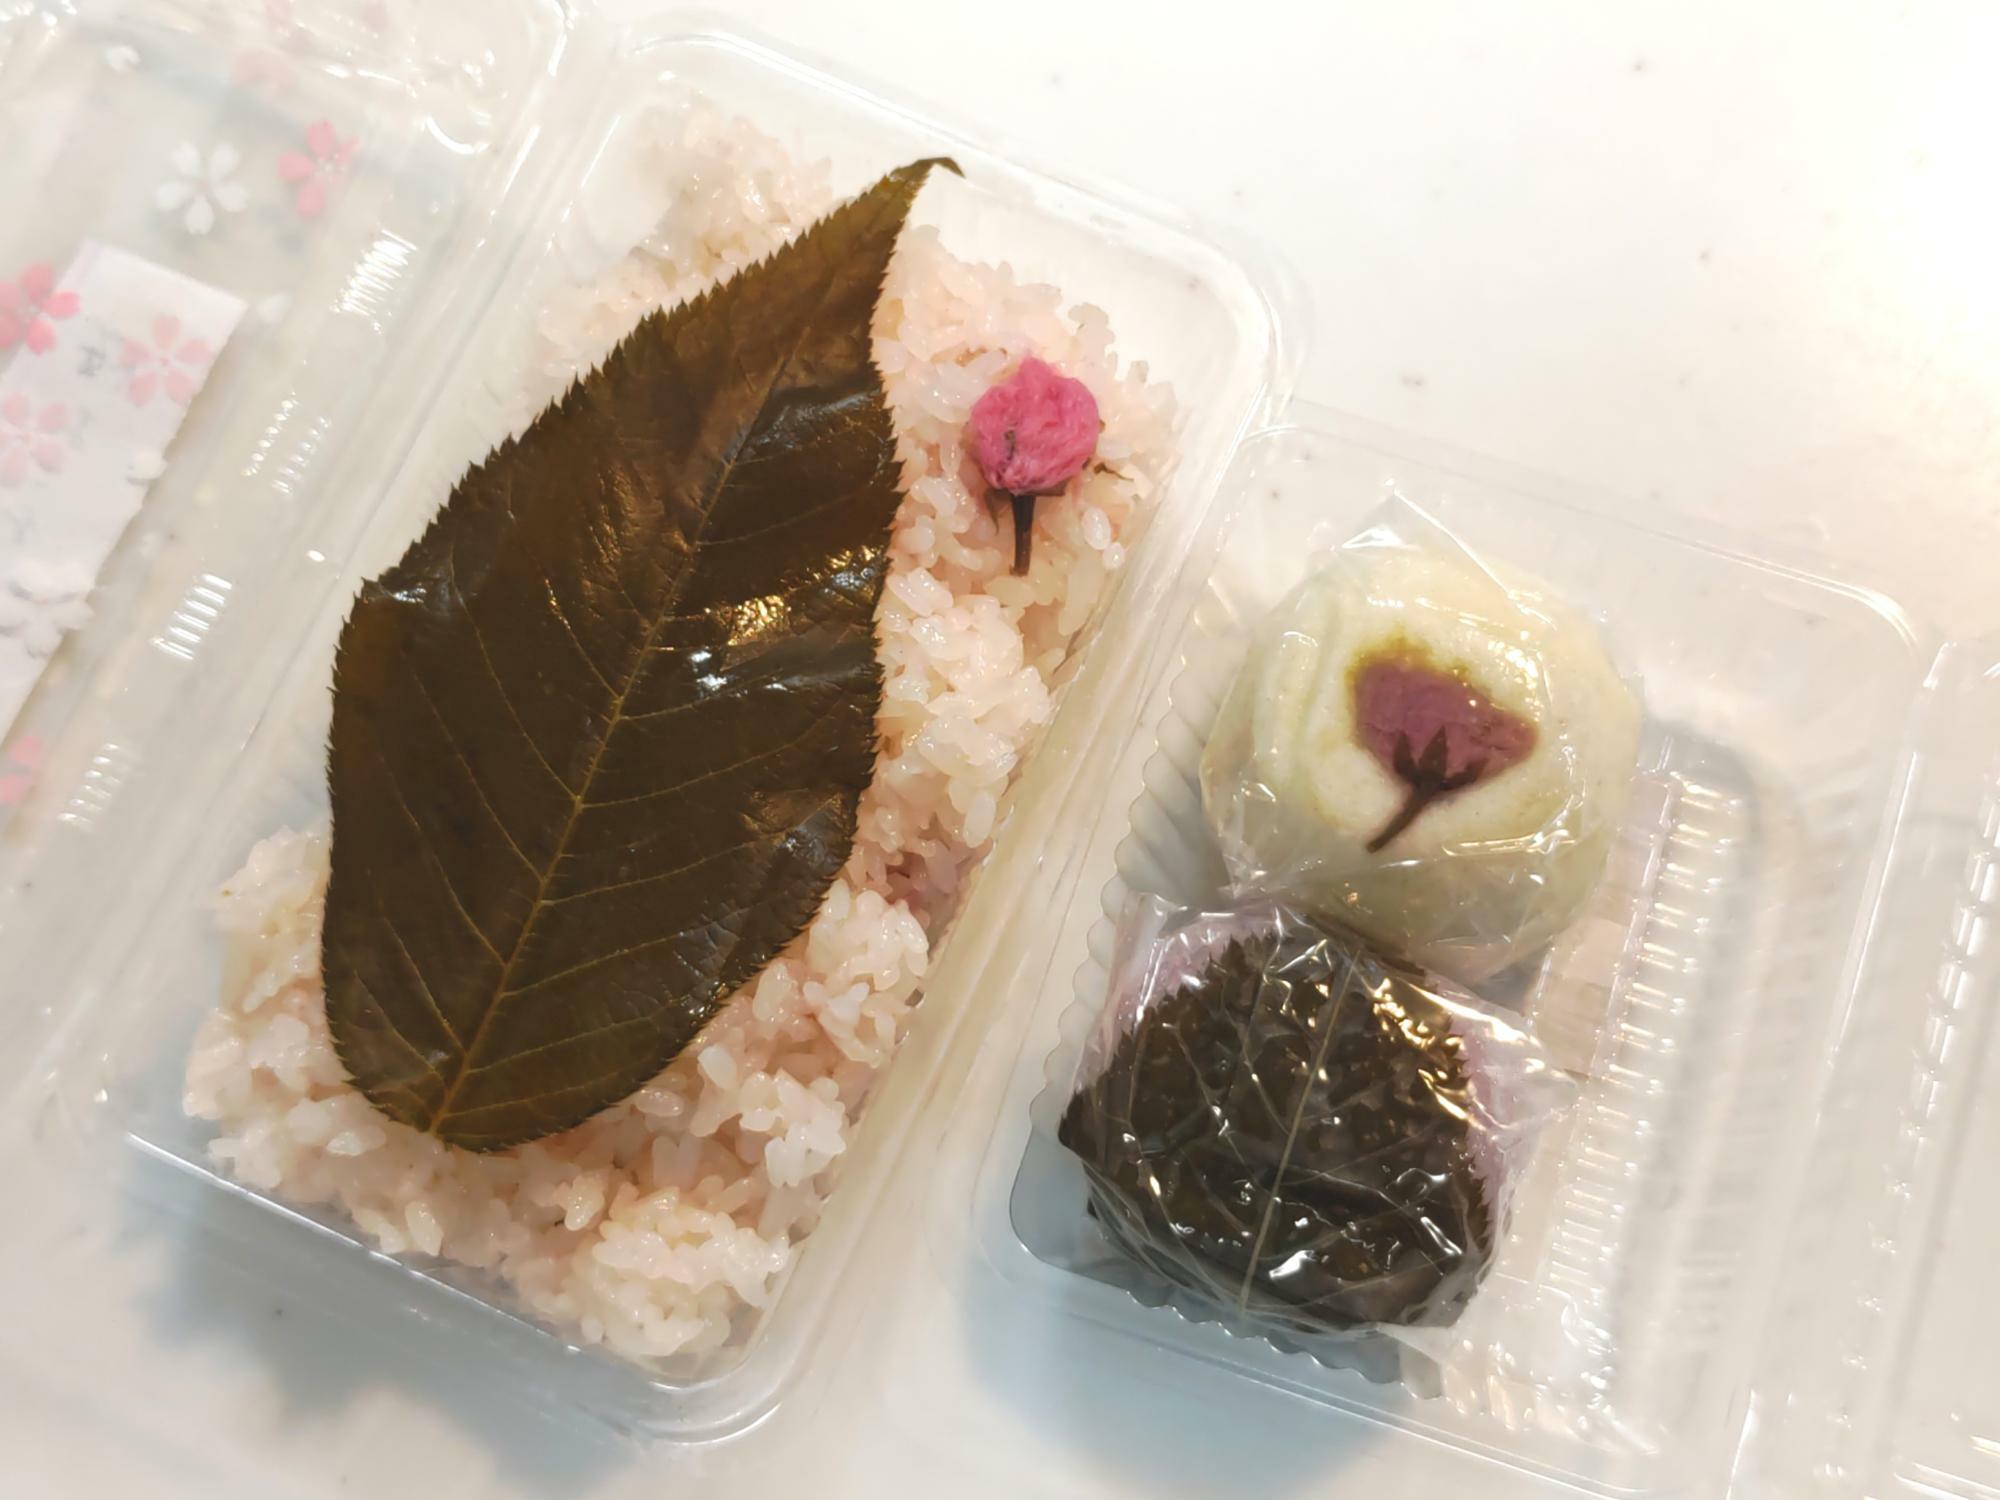 「磯崎家宗庵」さんの桜おこわと桜菓子セット